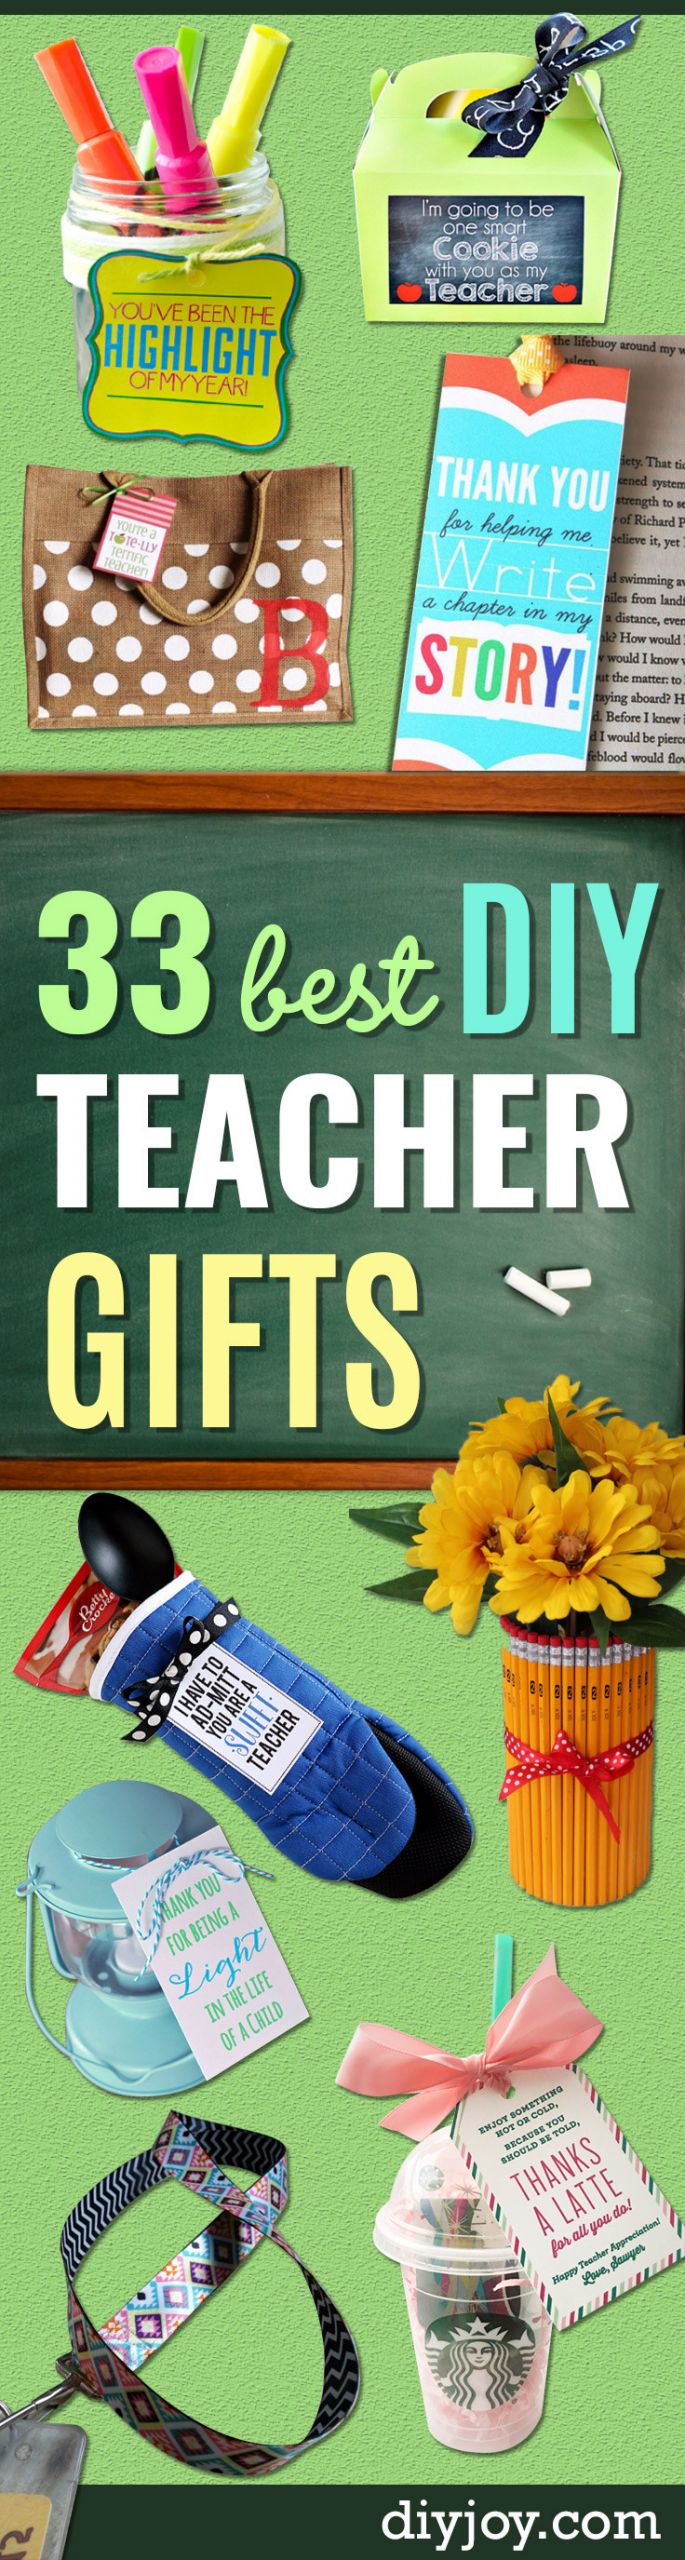 DIY Gifts For Teachers
 33 Best DIY Teacher Gifts